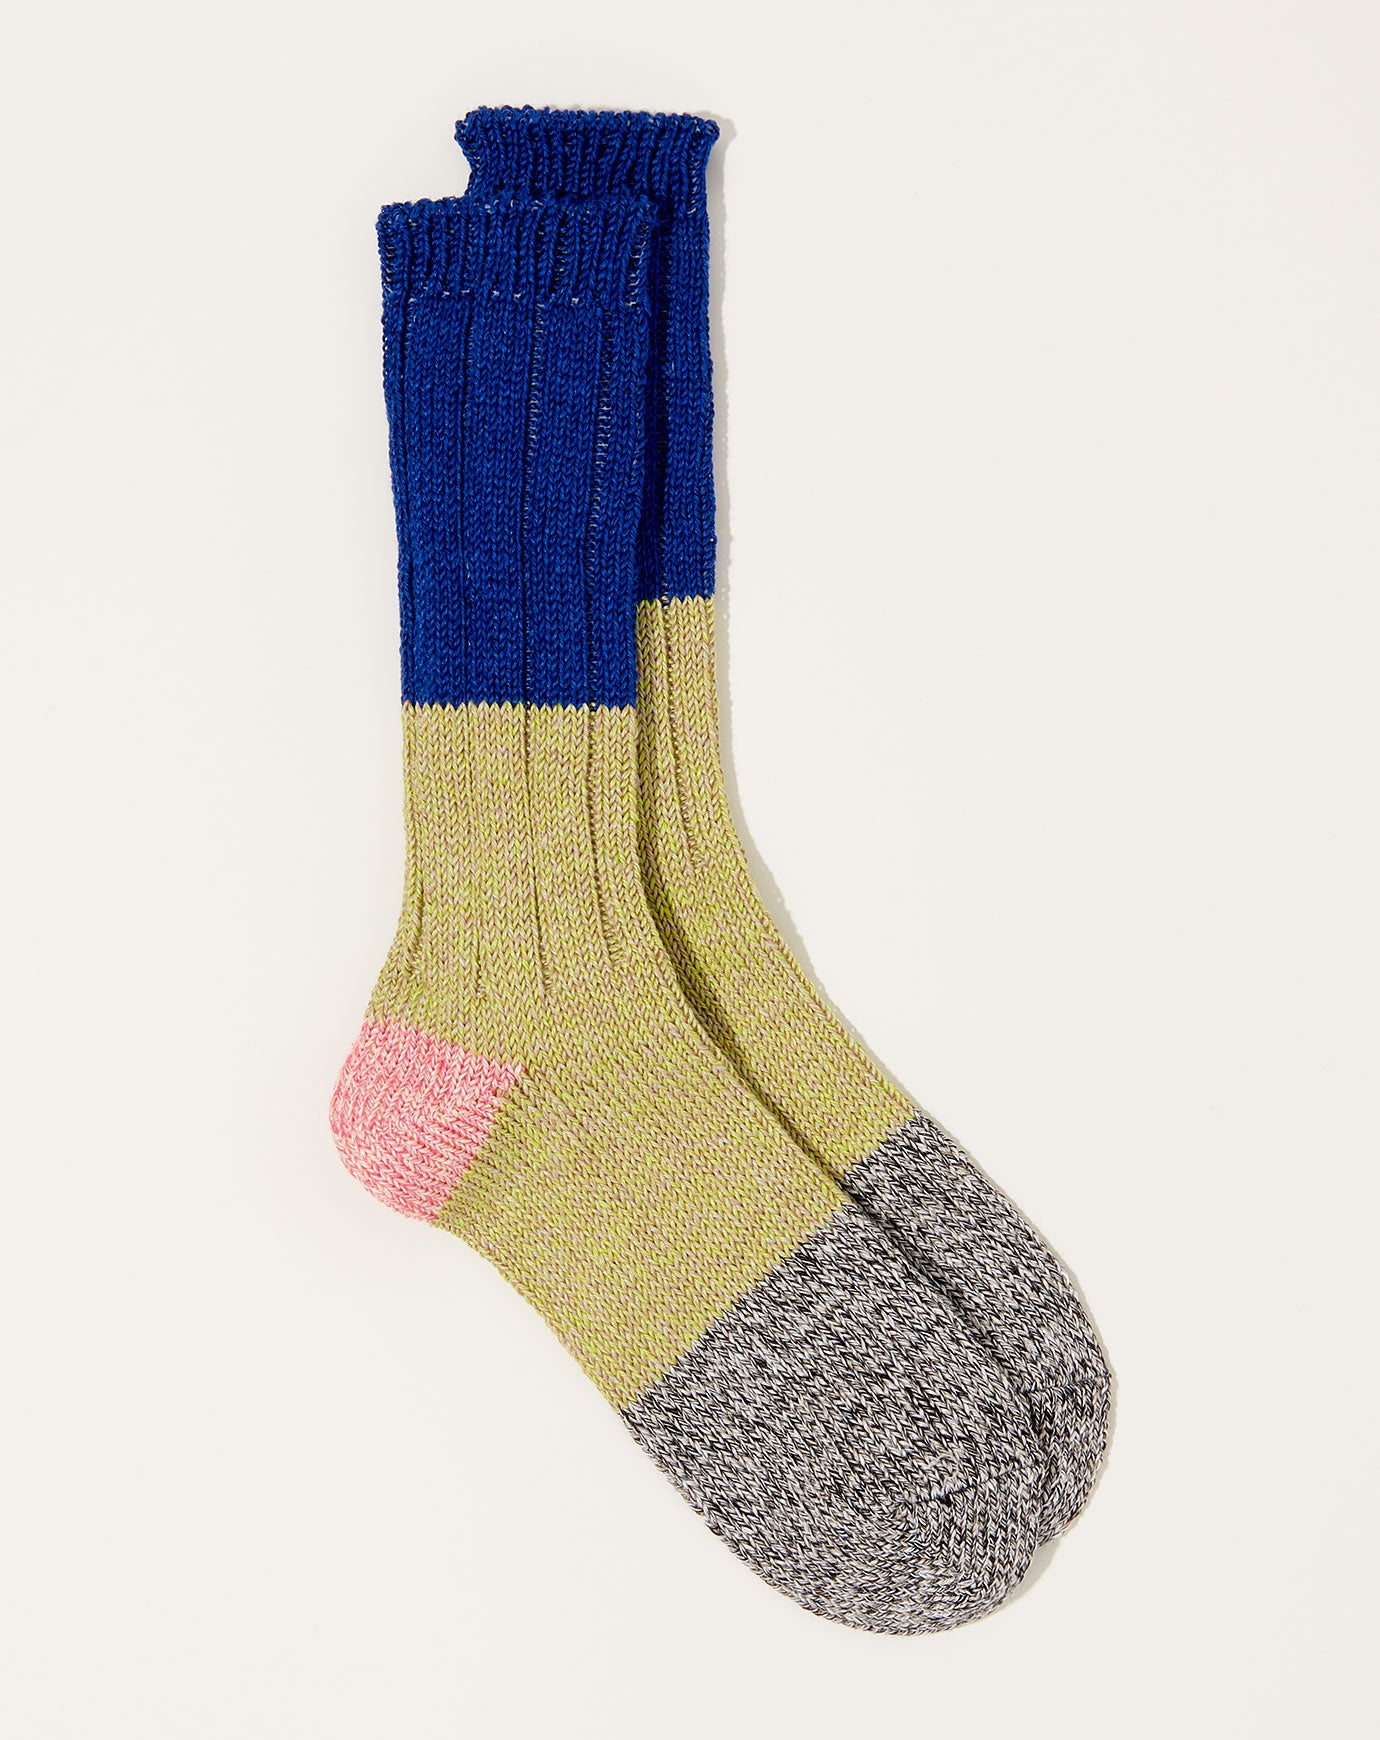 Kapital 56 Yarns Linen Grandrelle Socks in Blue